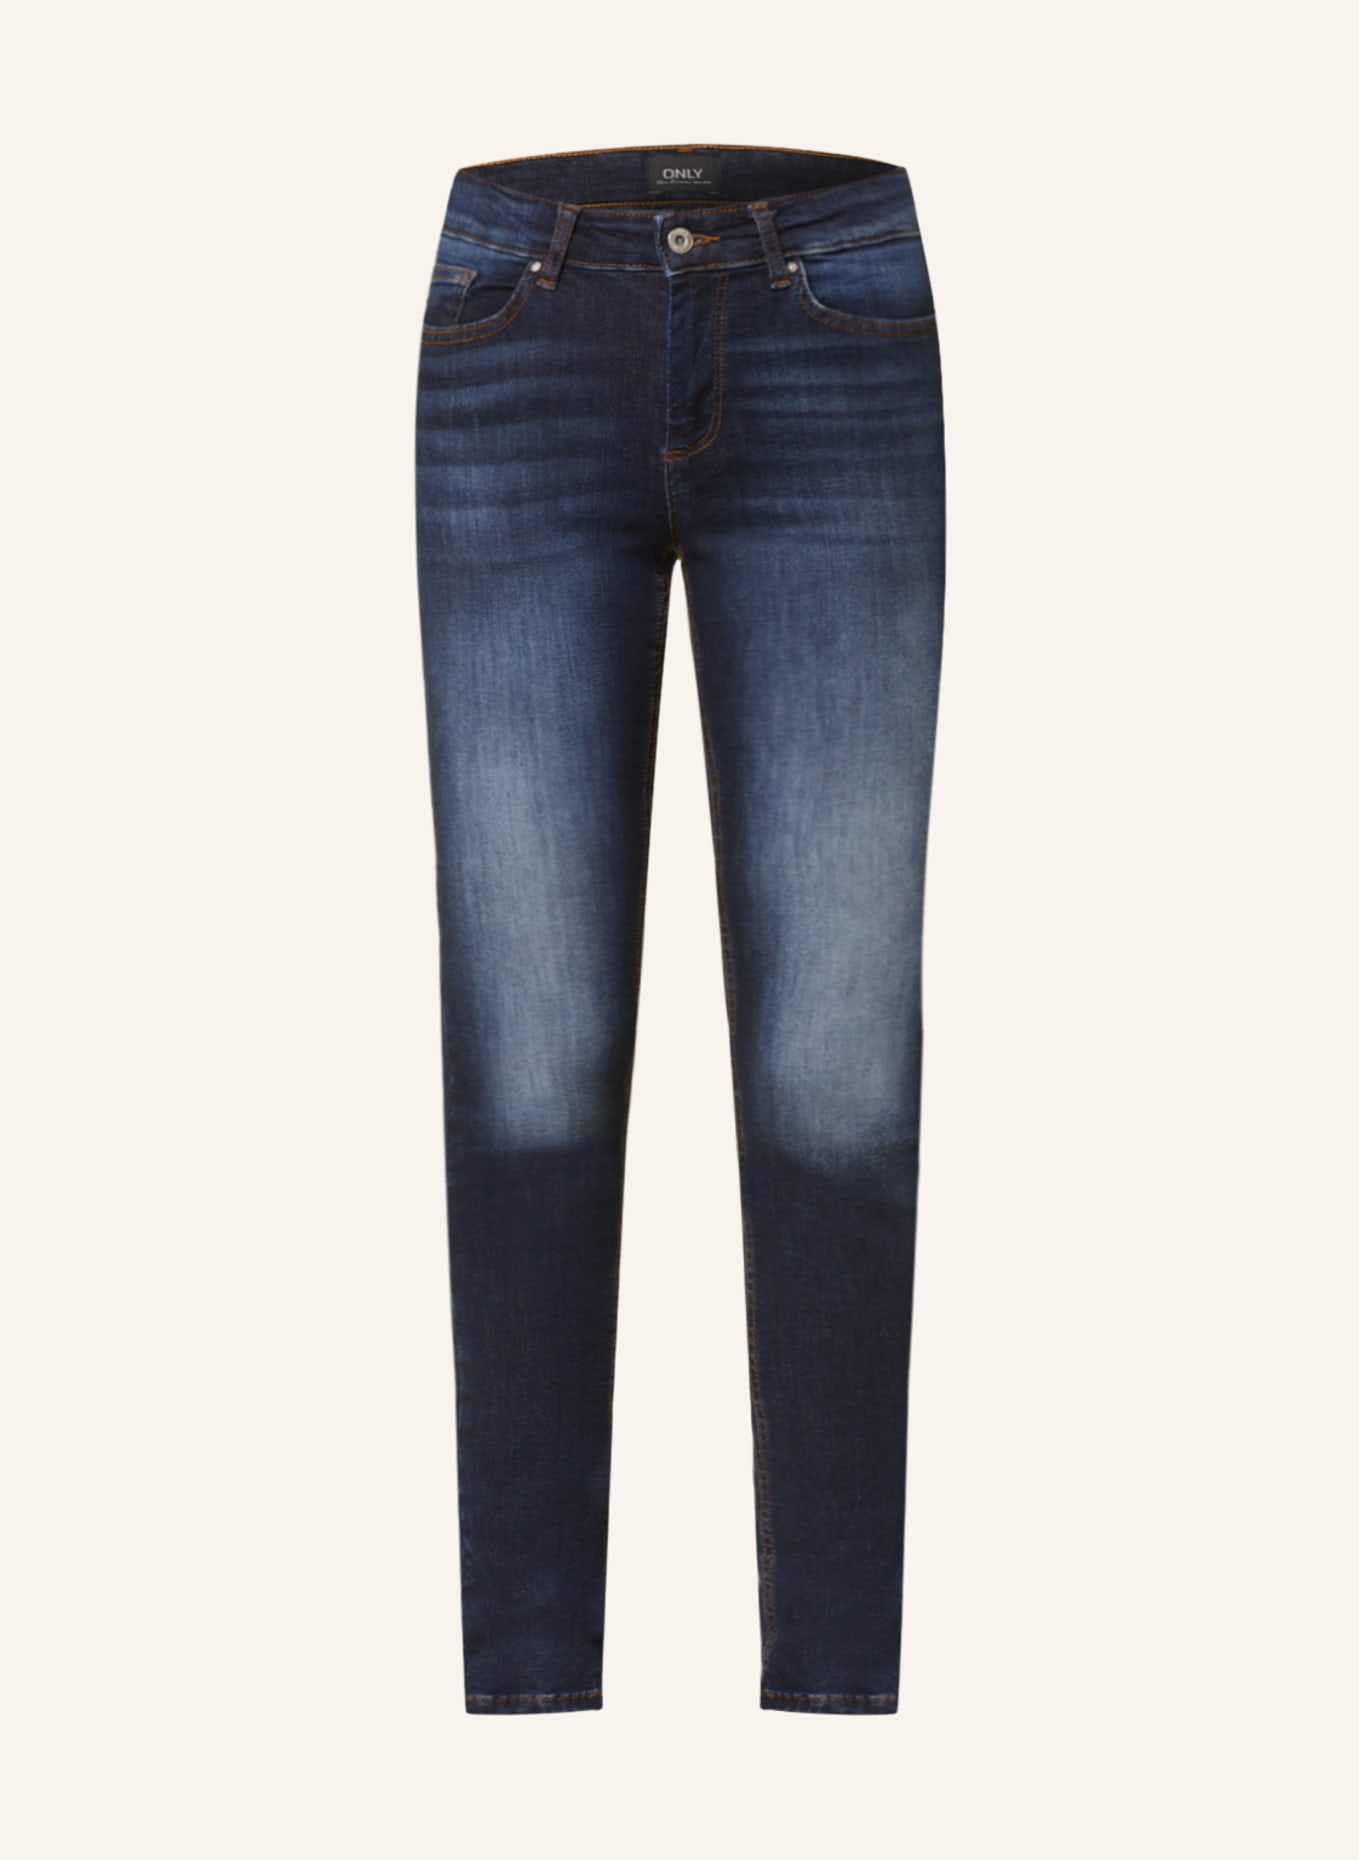 ONLY Skinny jeans, Color: Dark Blue Denim/REA837 (Image 1)